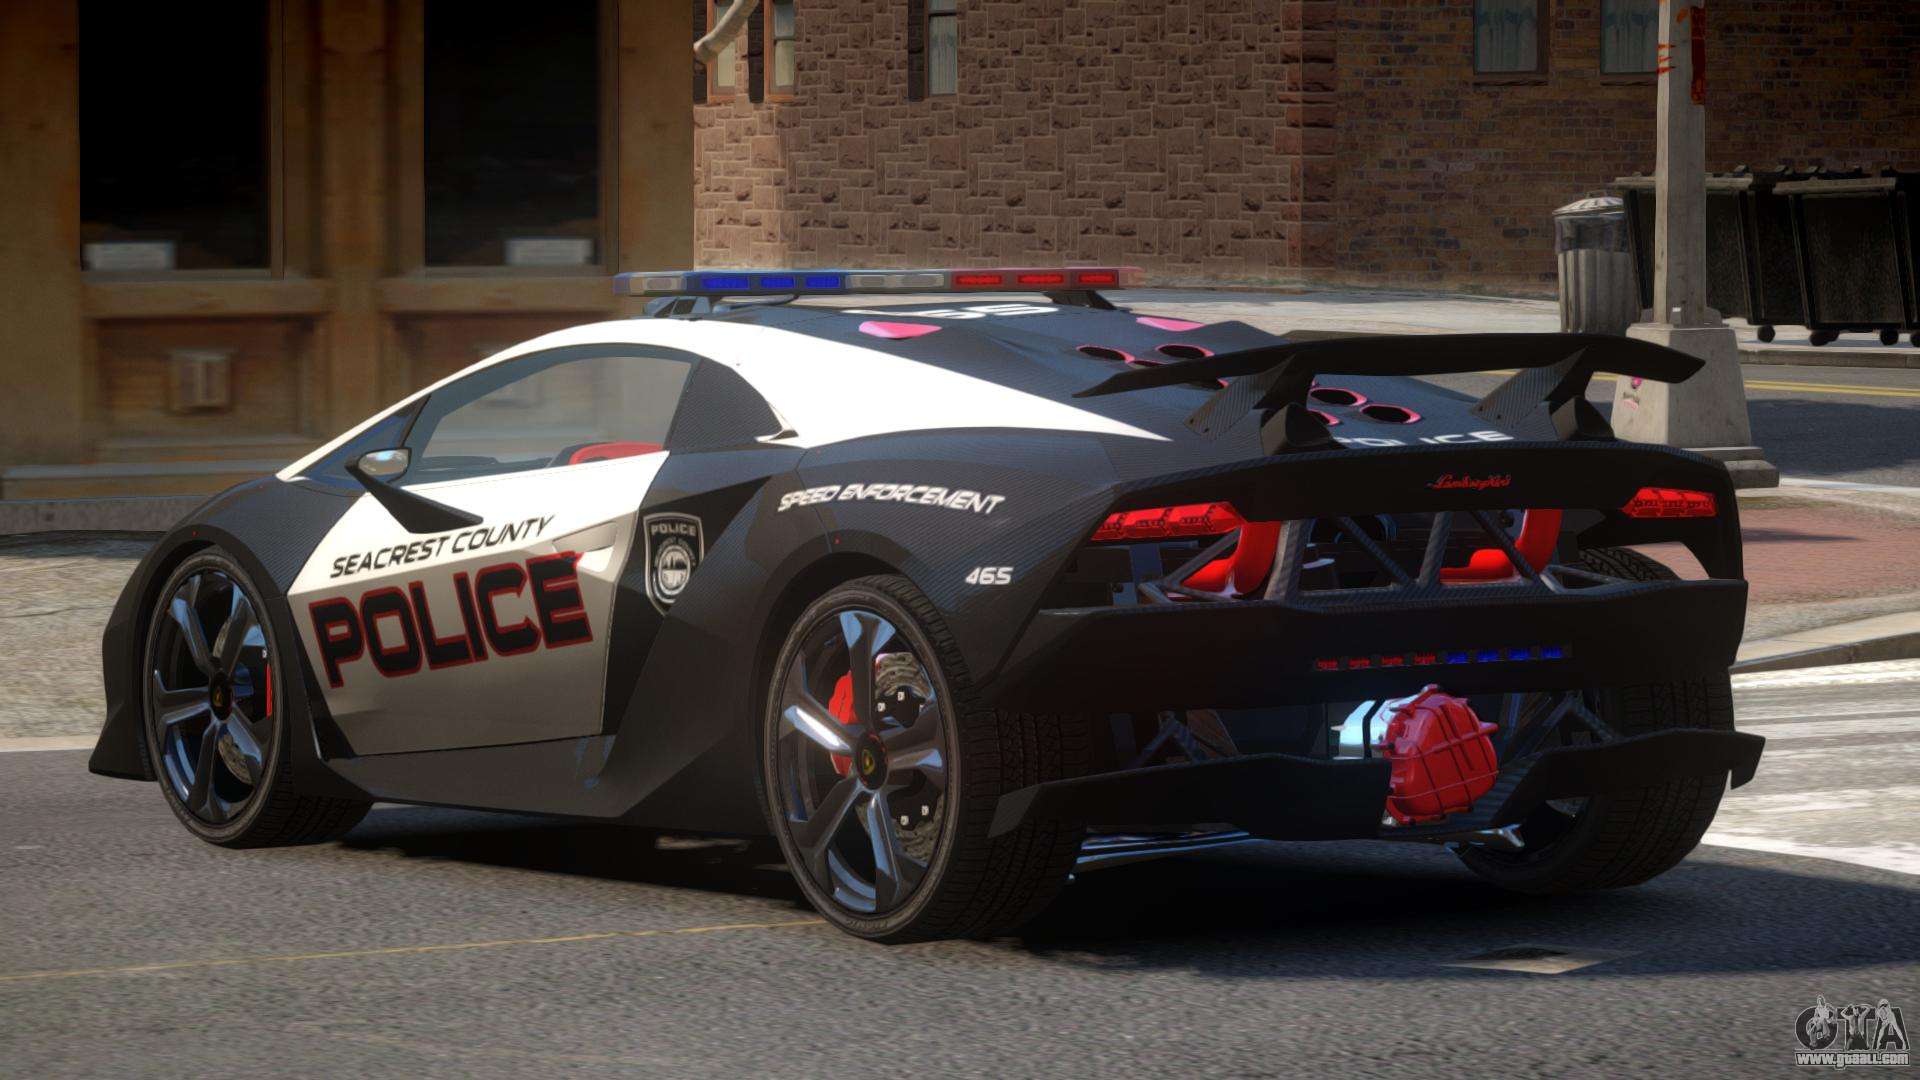 Lamborghini SE Police V1.2 for GTA 4